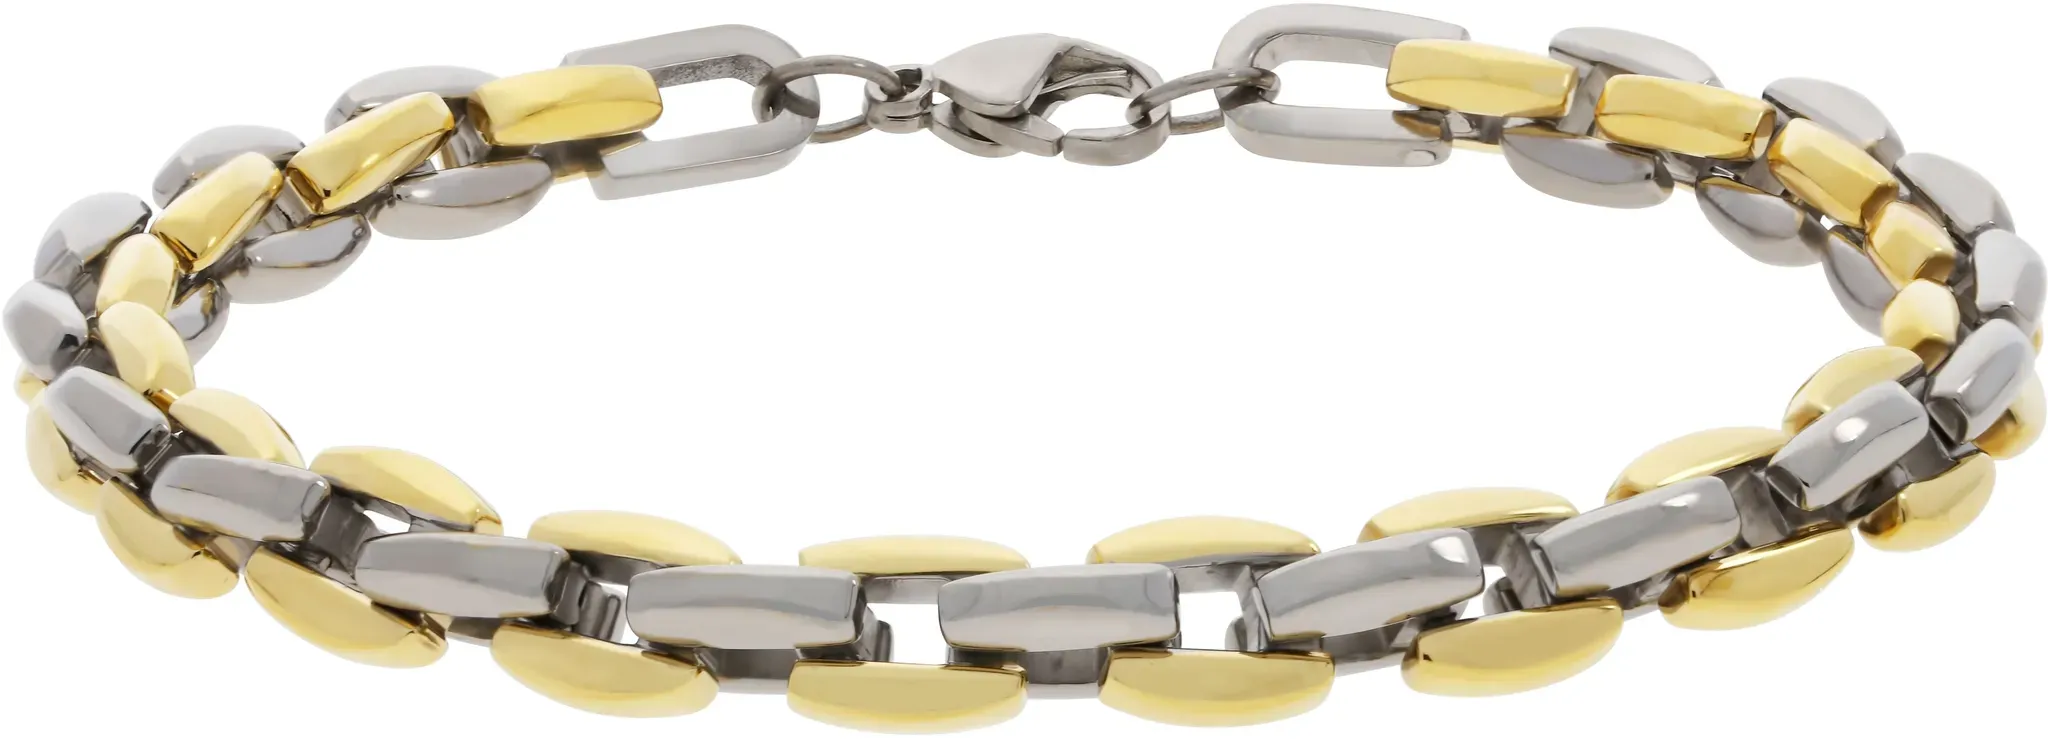 Armband TITANIA "Armbänder" Armbänder Gr. Titan, silberfarben (silbergoldfarben) Damen Armbänder Silber